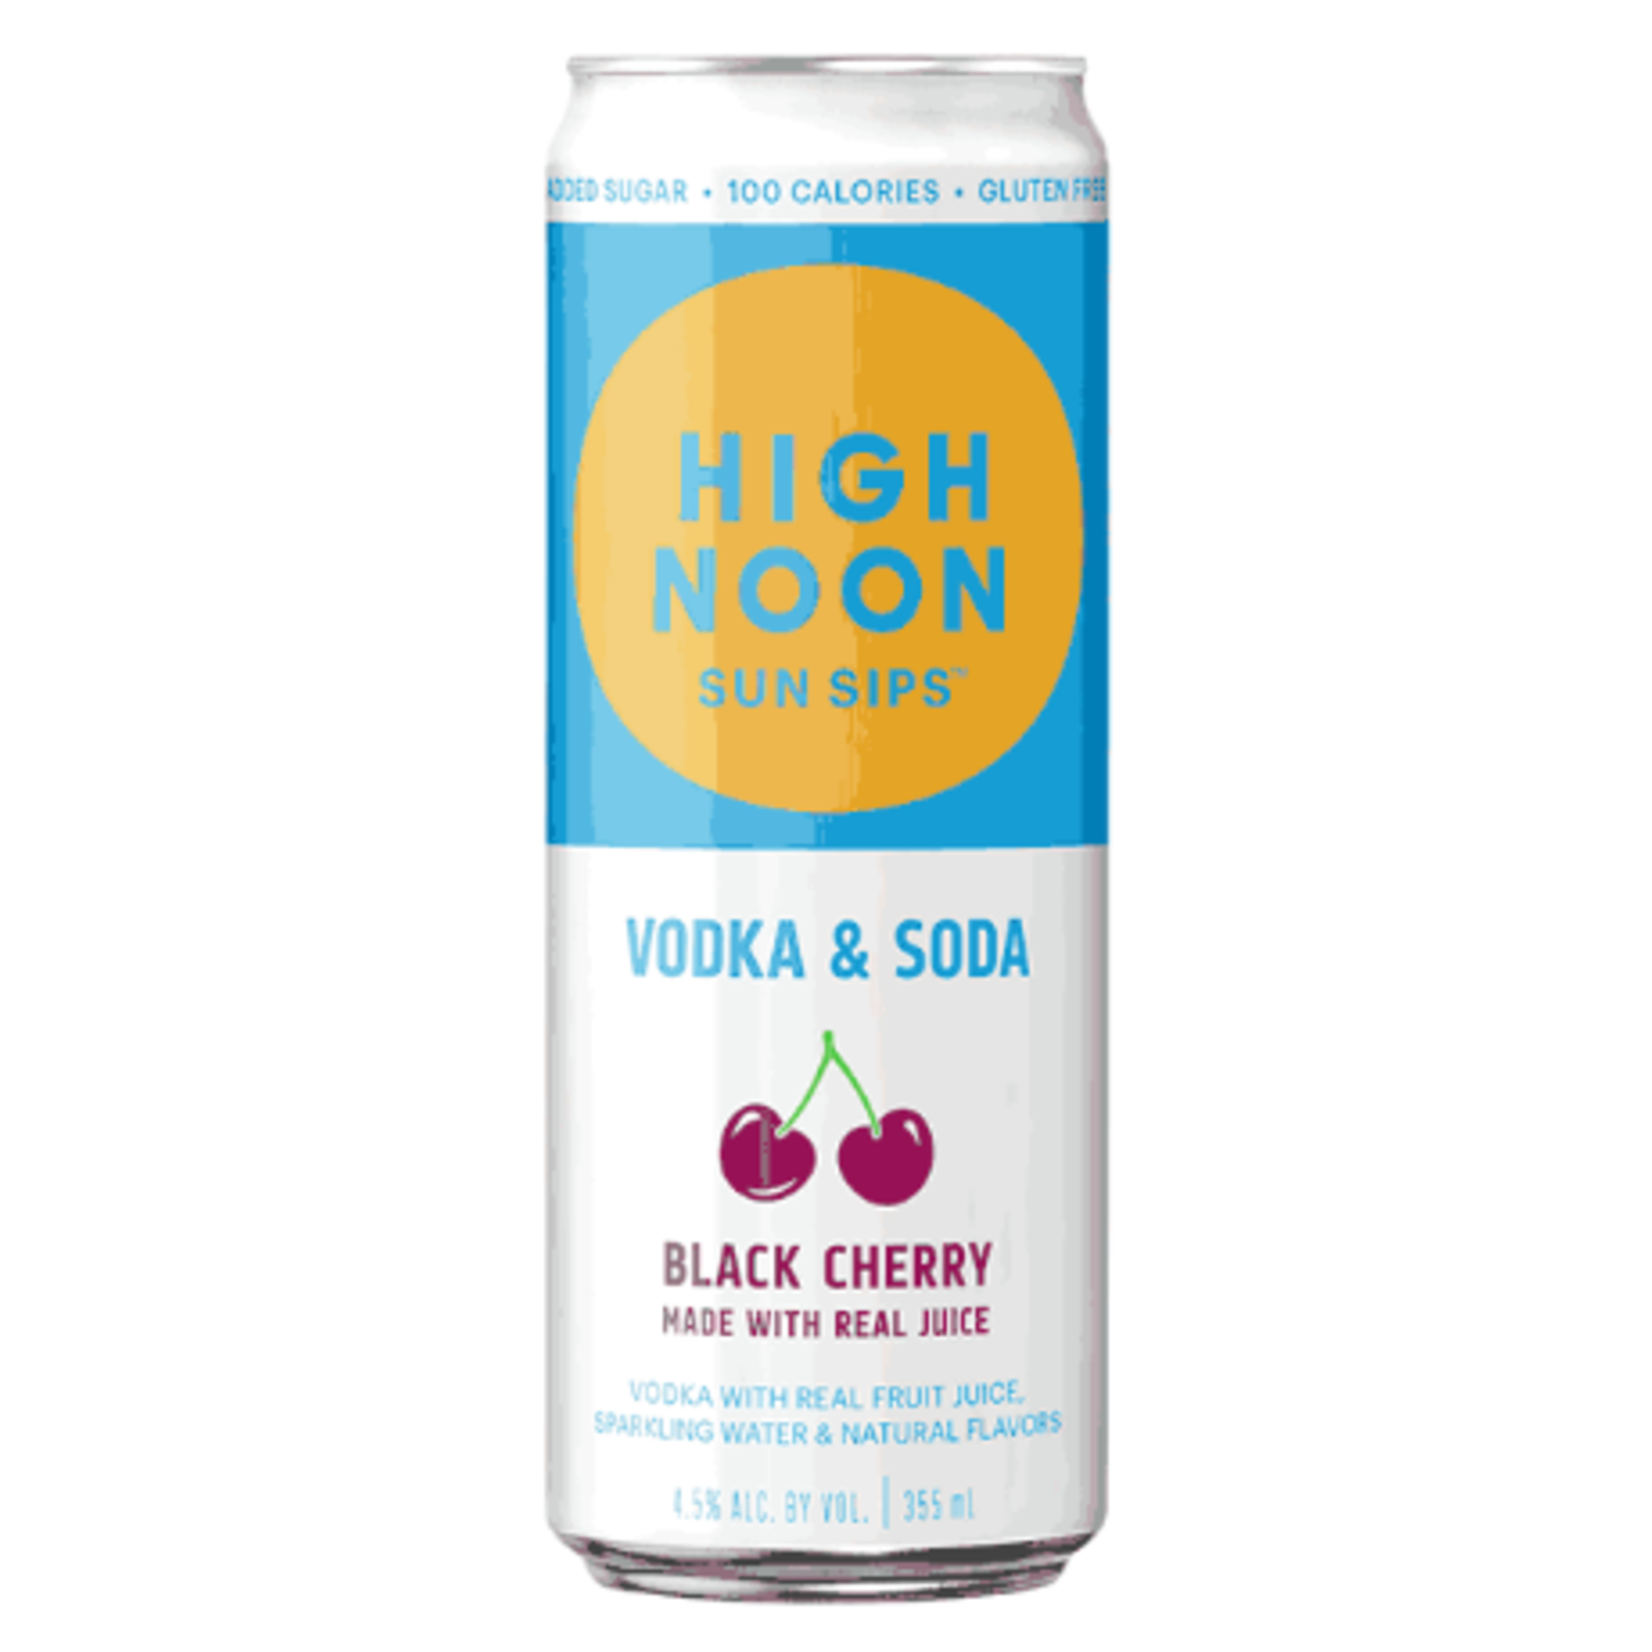 High Noon, Black Cherry Vodka Soda